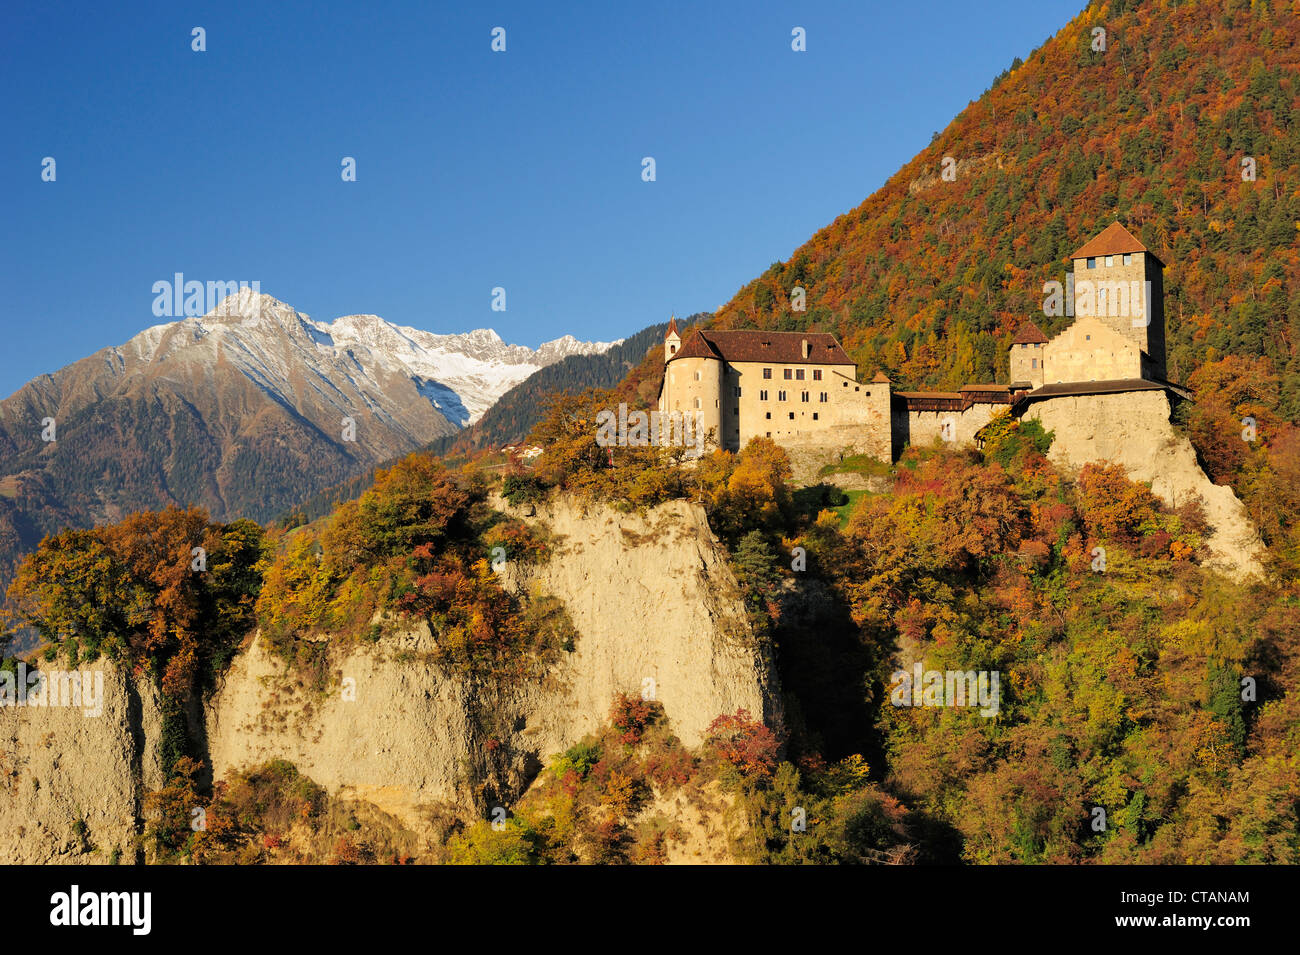 Burg Schloss Tirol mit Bergen in herbstlichen Farben und Texel Bereich im Hintergrund, Schloss Tirol, Meran, Südtirol, Italien, E Stockfoto